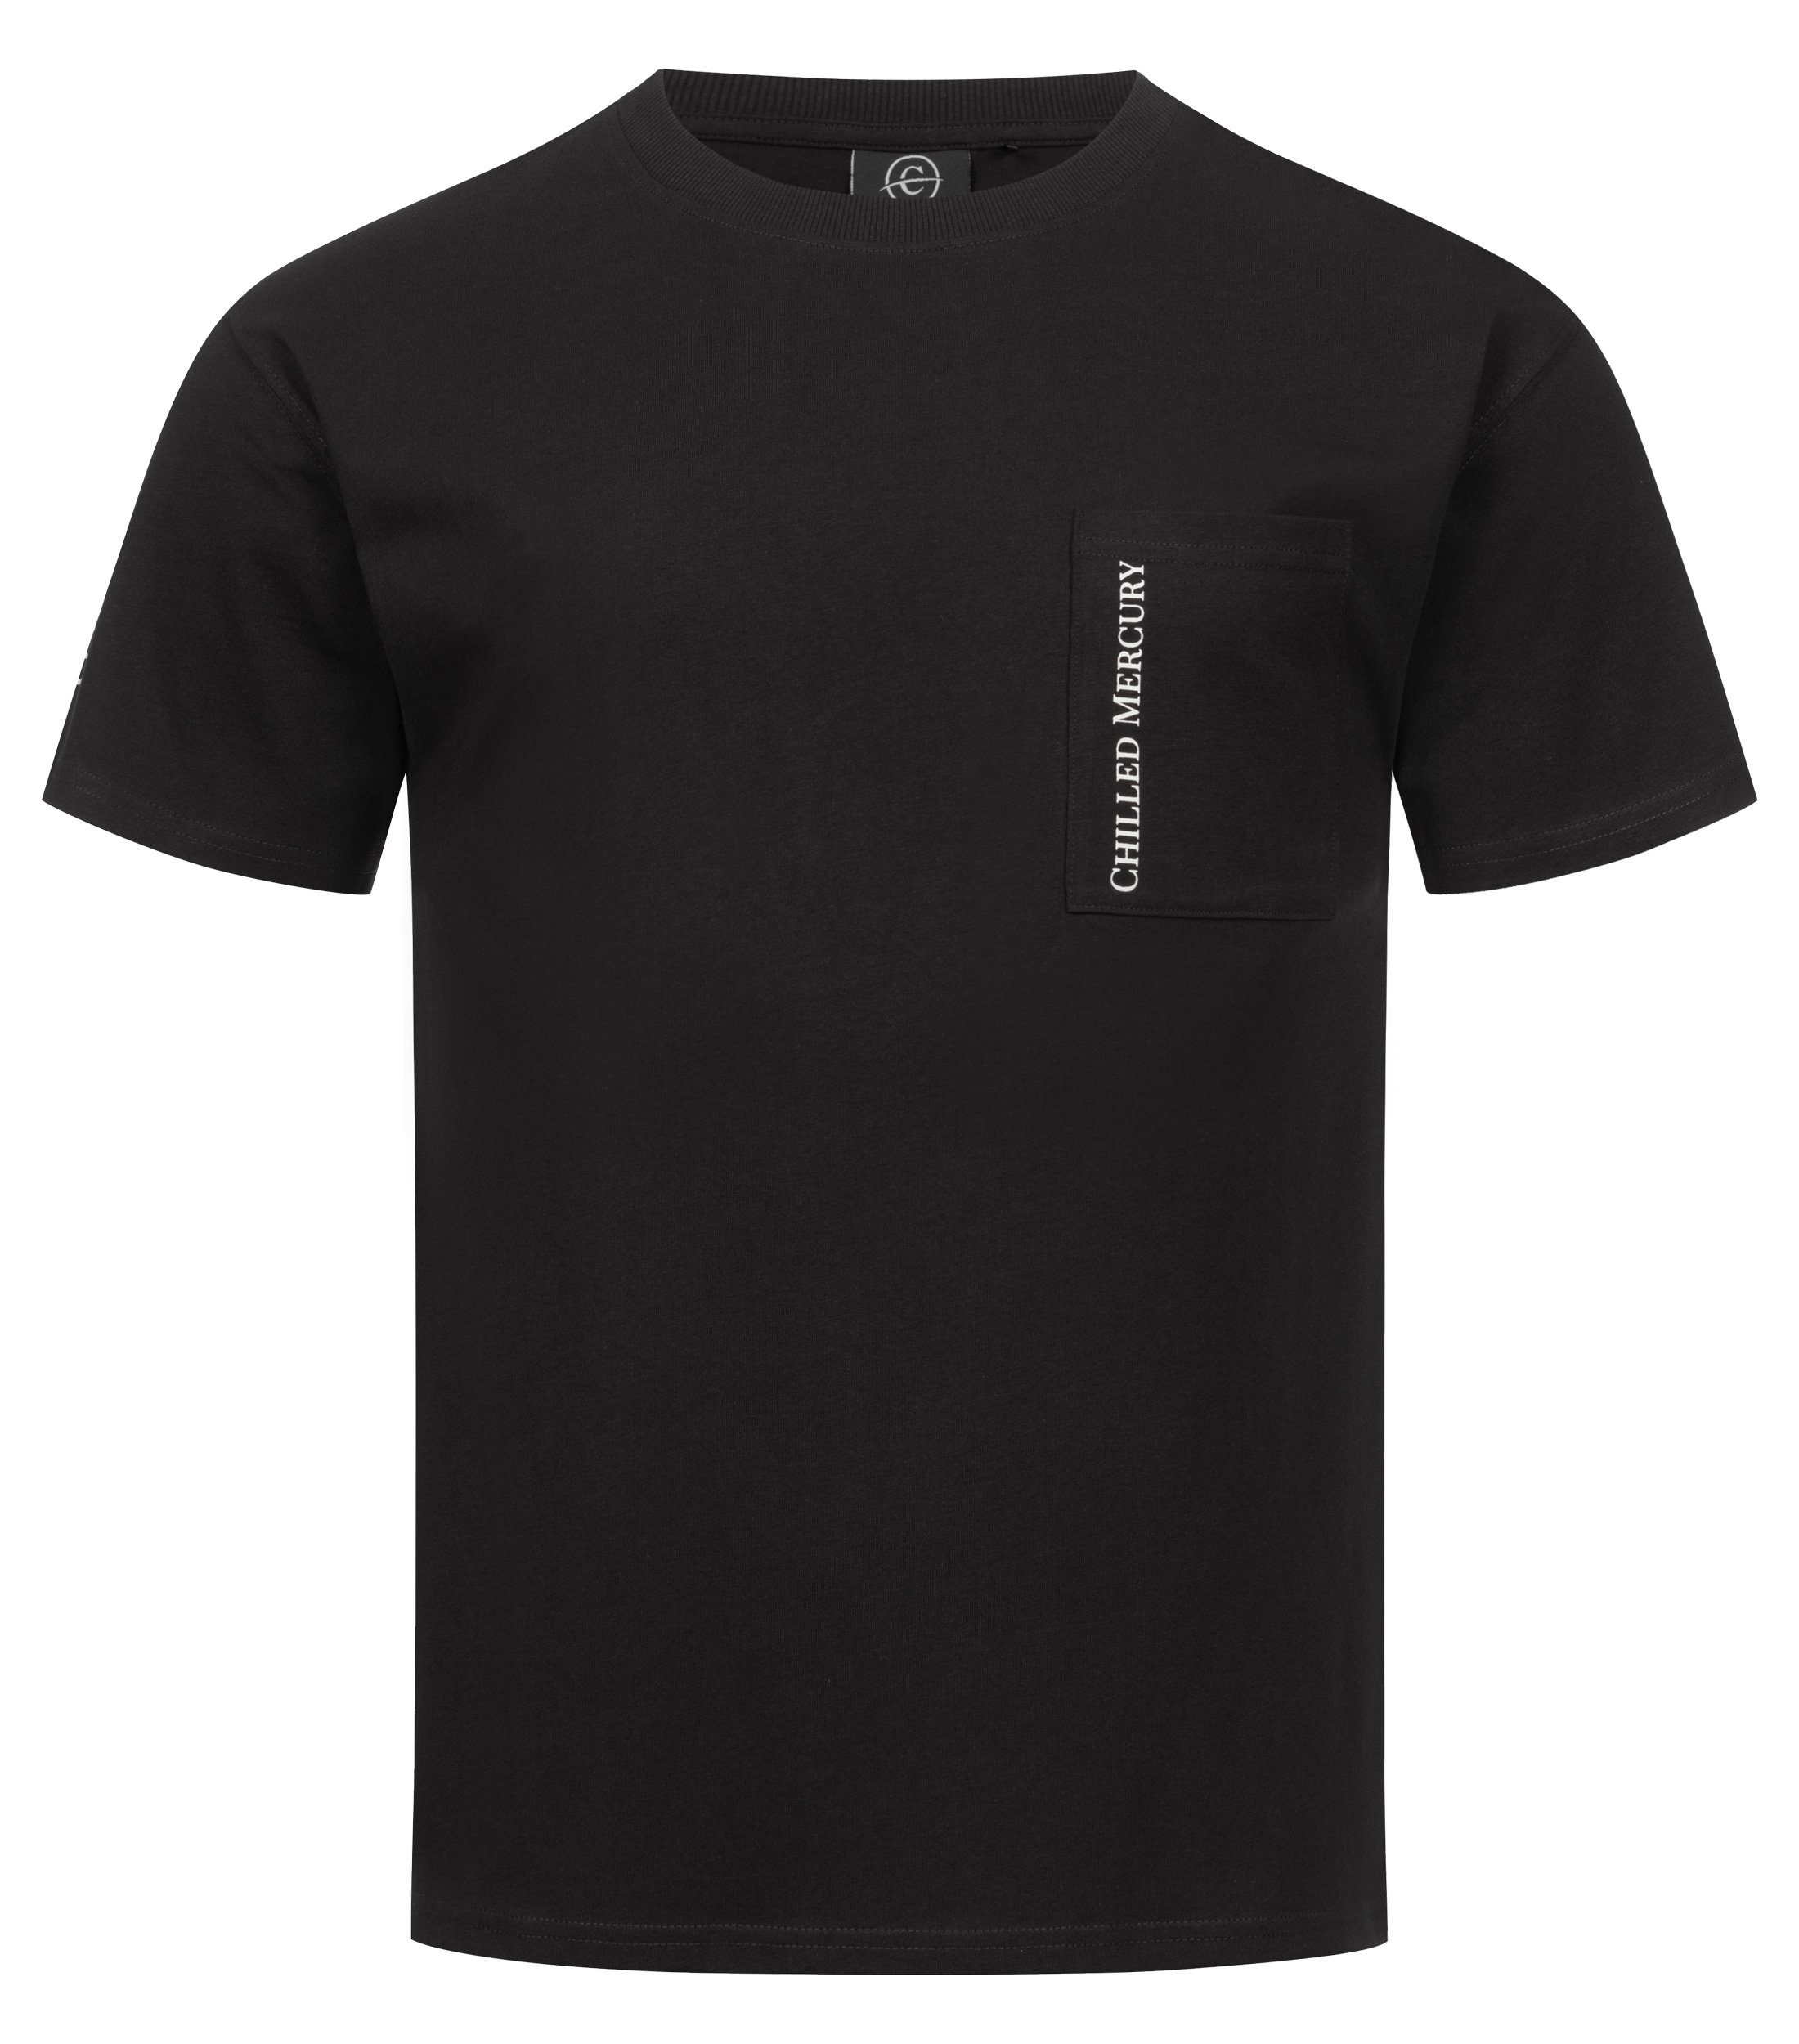 Chilled Mercury T-Shirt Baumwolle Freizeit mit Shirt/ Rundhals Brusttasche Schwarz